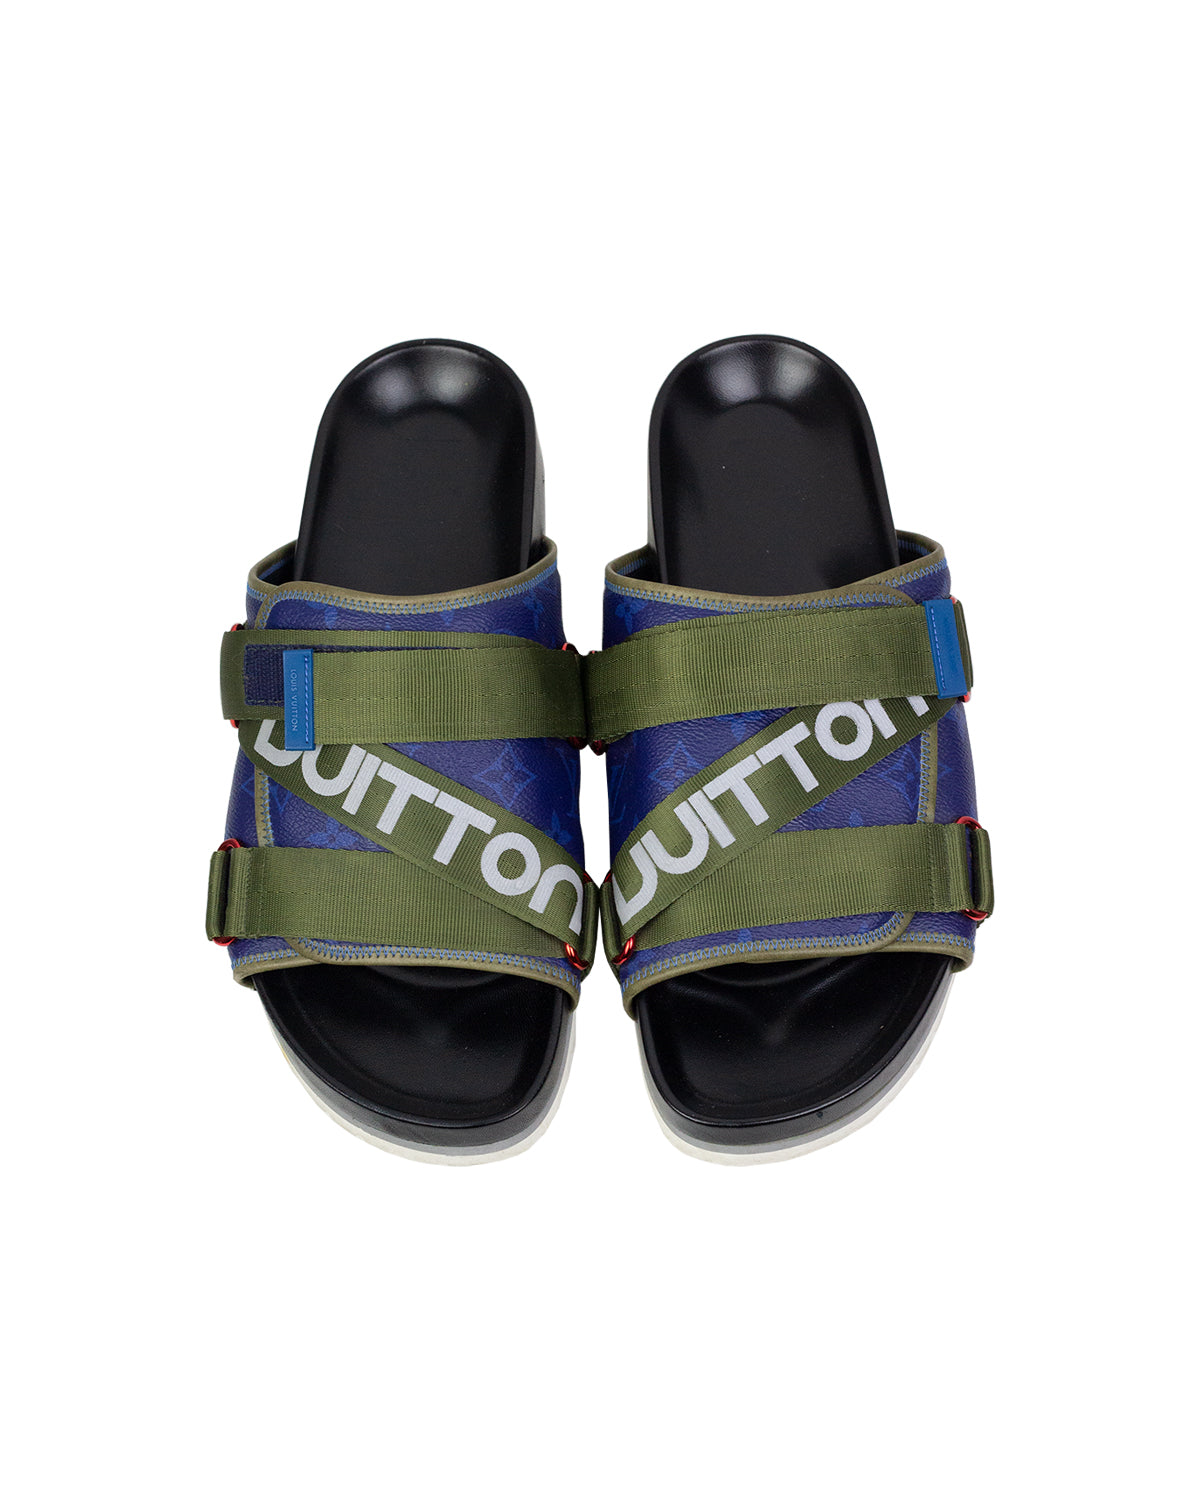 Louis Vuitton - Louis Vuitton Sandals by Kim Jones